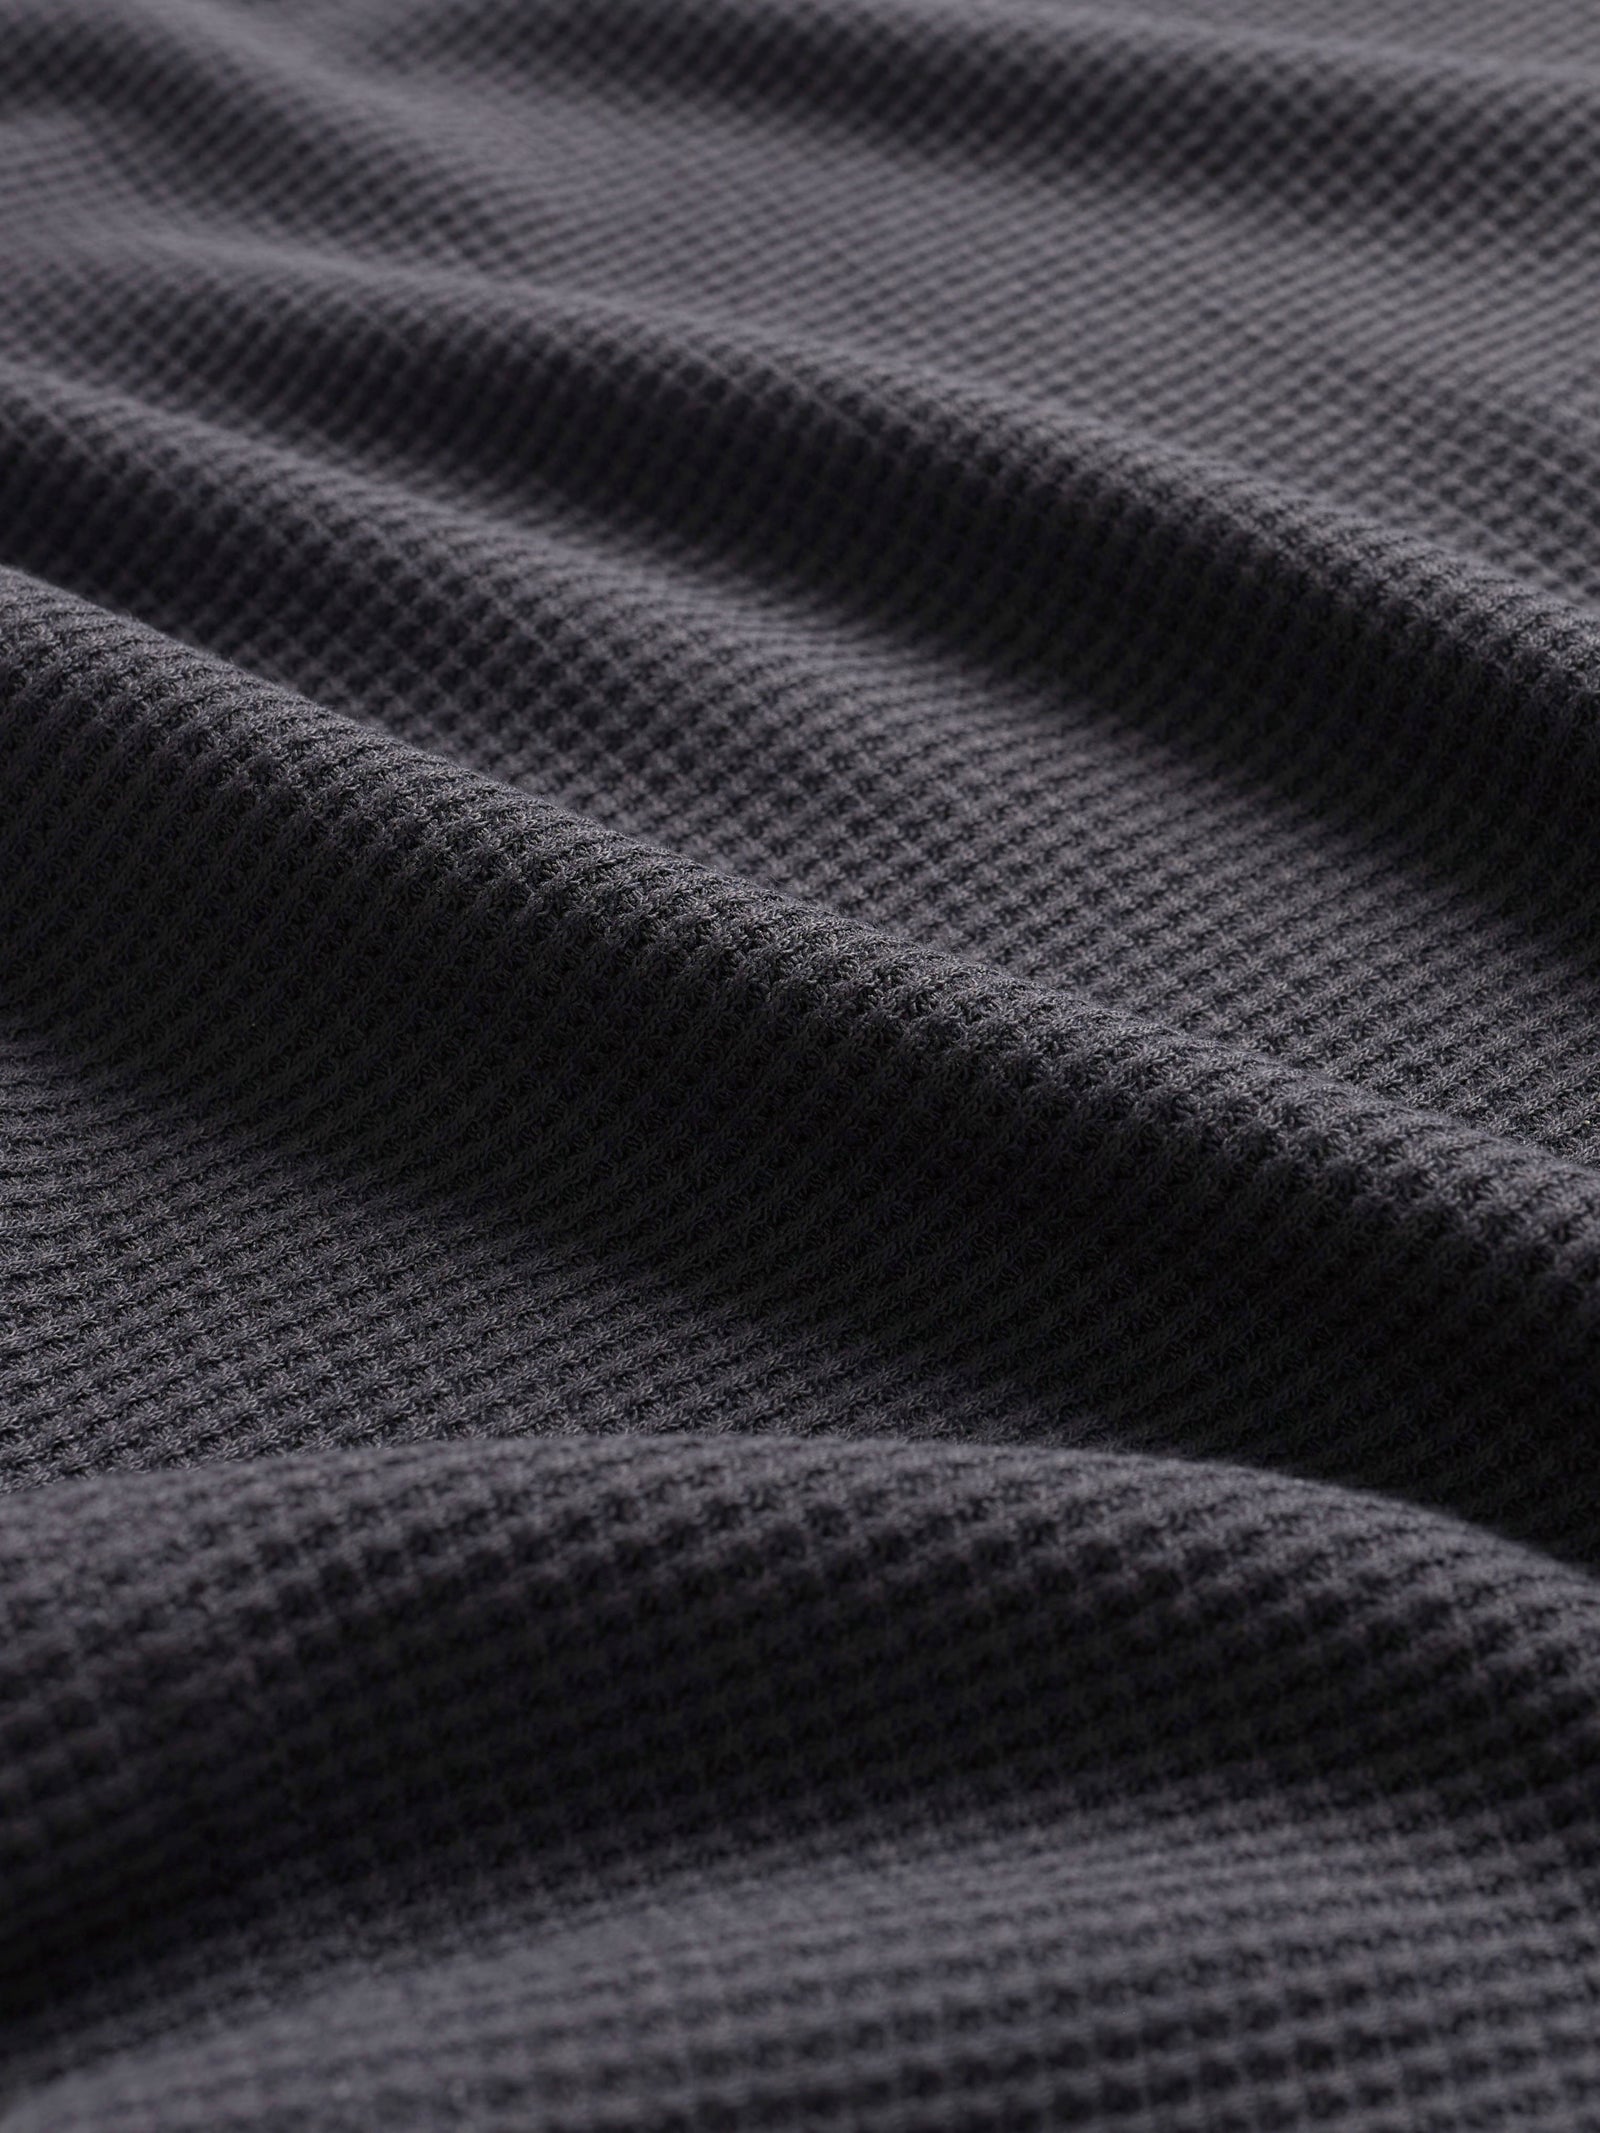 Up close photo of Waffle Knit Dress fabric